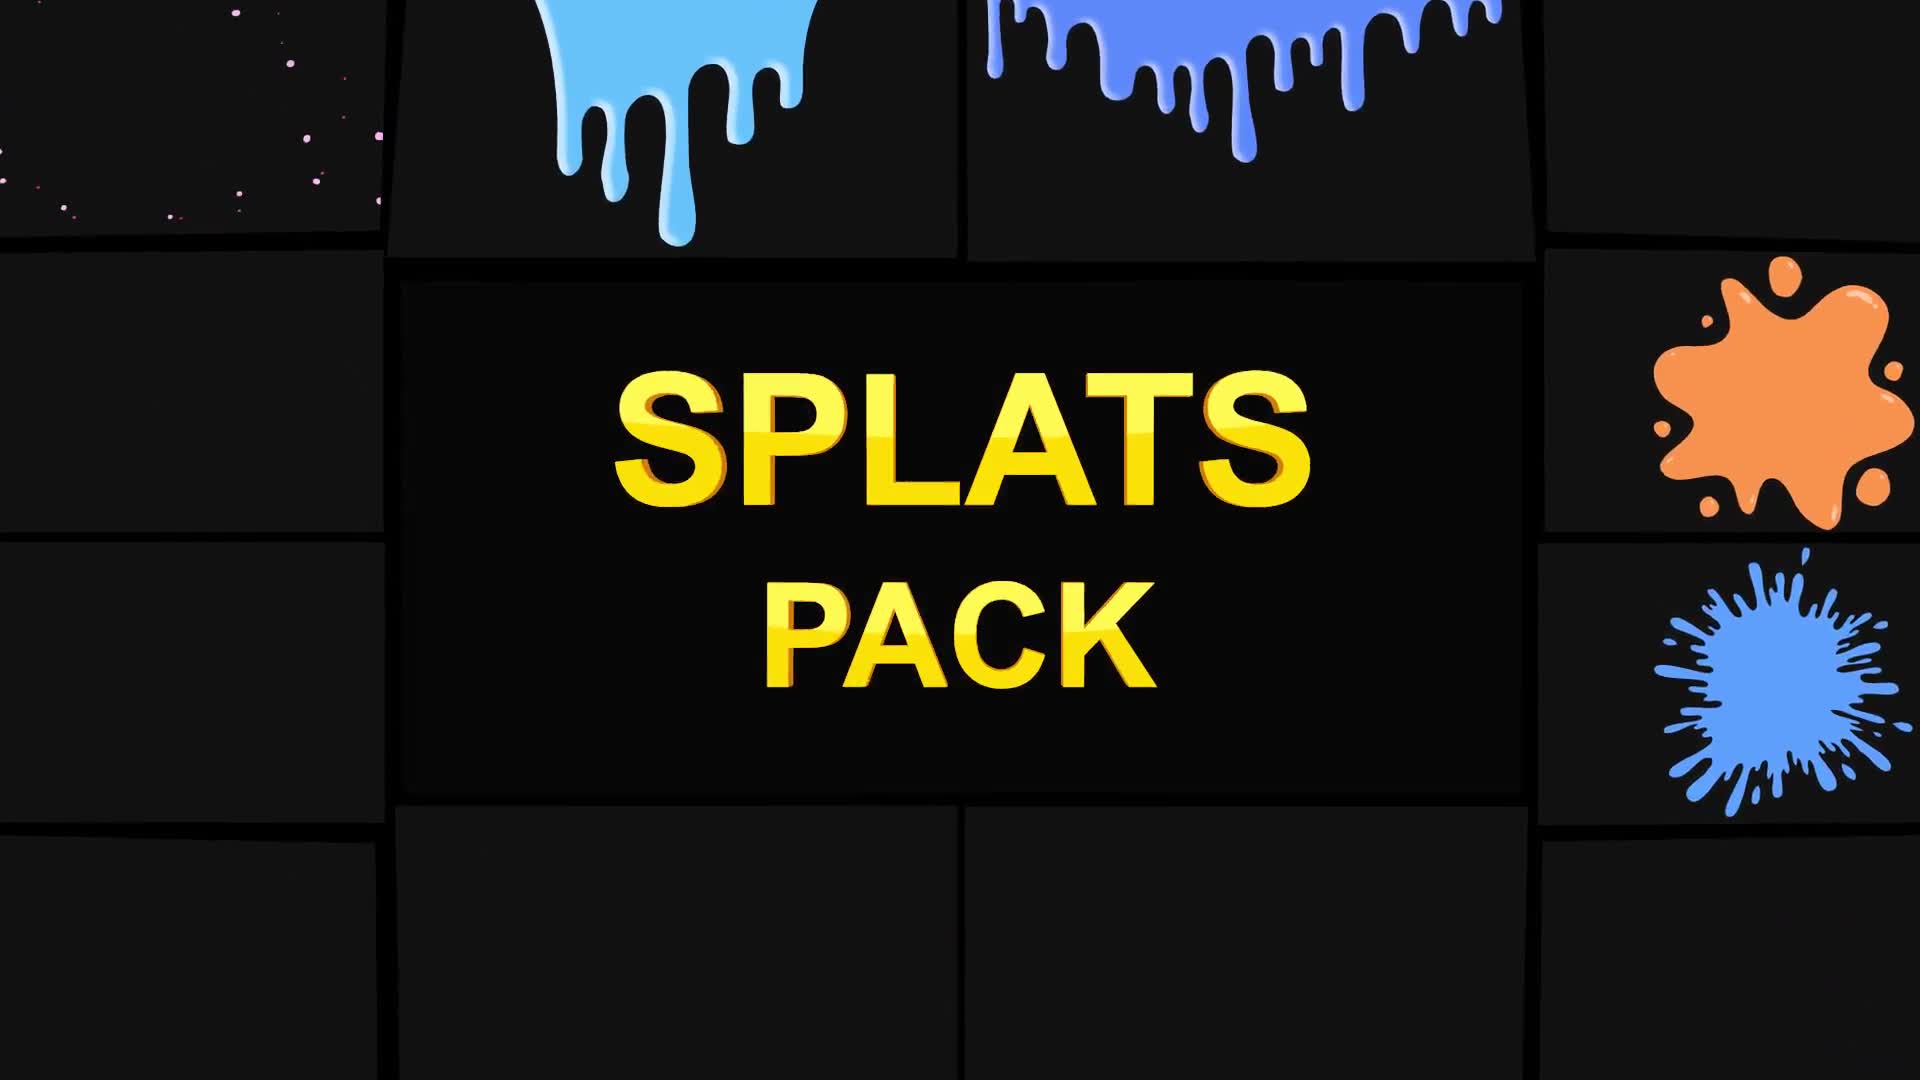 Splats Pack | Premiere Pro MOGRT Videohive 25997050 Premiere Pro Image 2